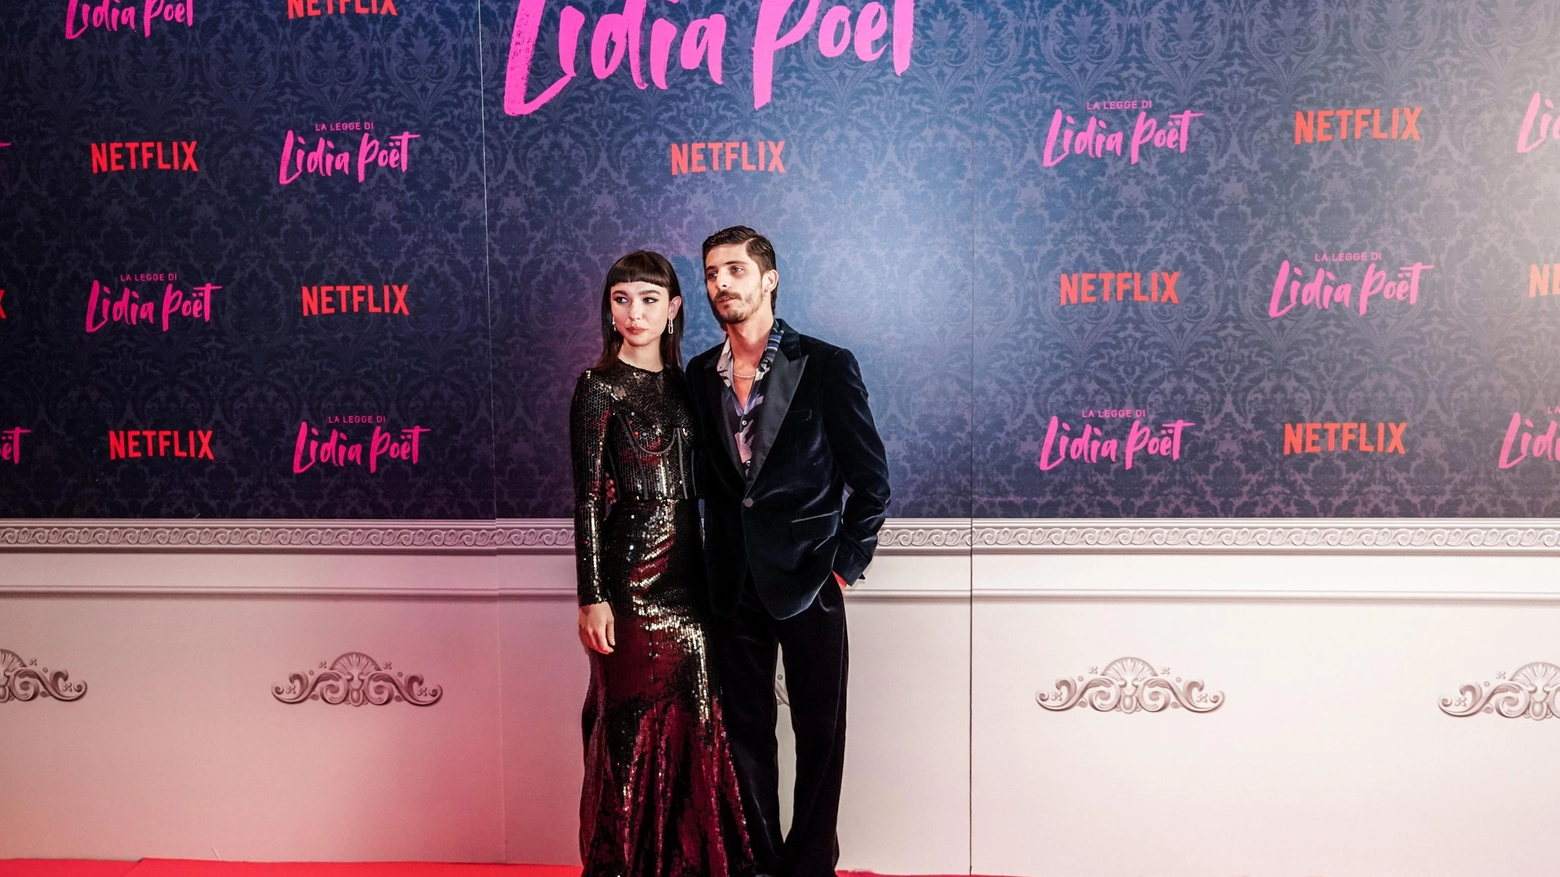 Matilda De Angelis e il fidanzato Alessandro De Santis, membro del gruppo Santi Francesi, sul red carpet della serie Netflix Lidia Poet